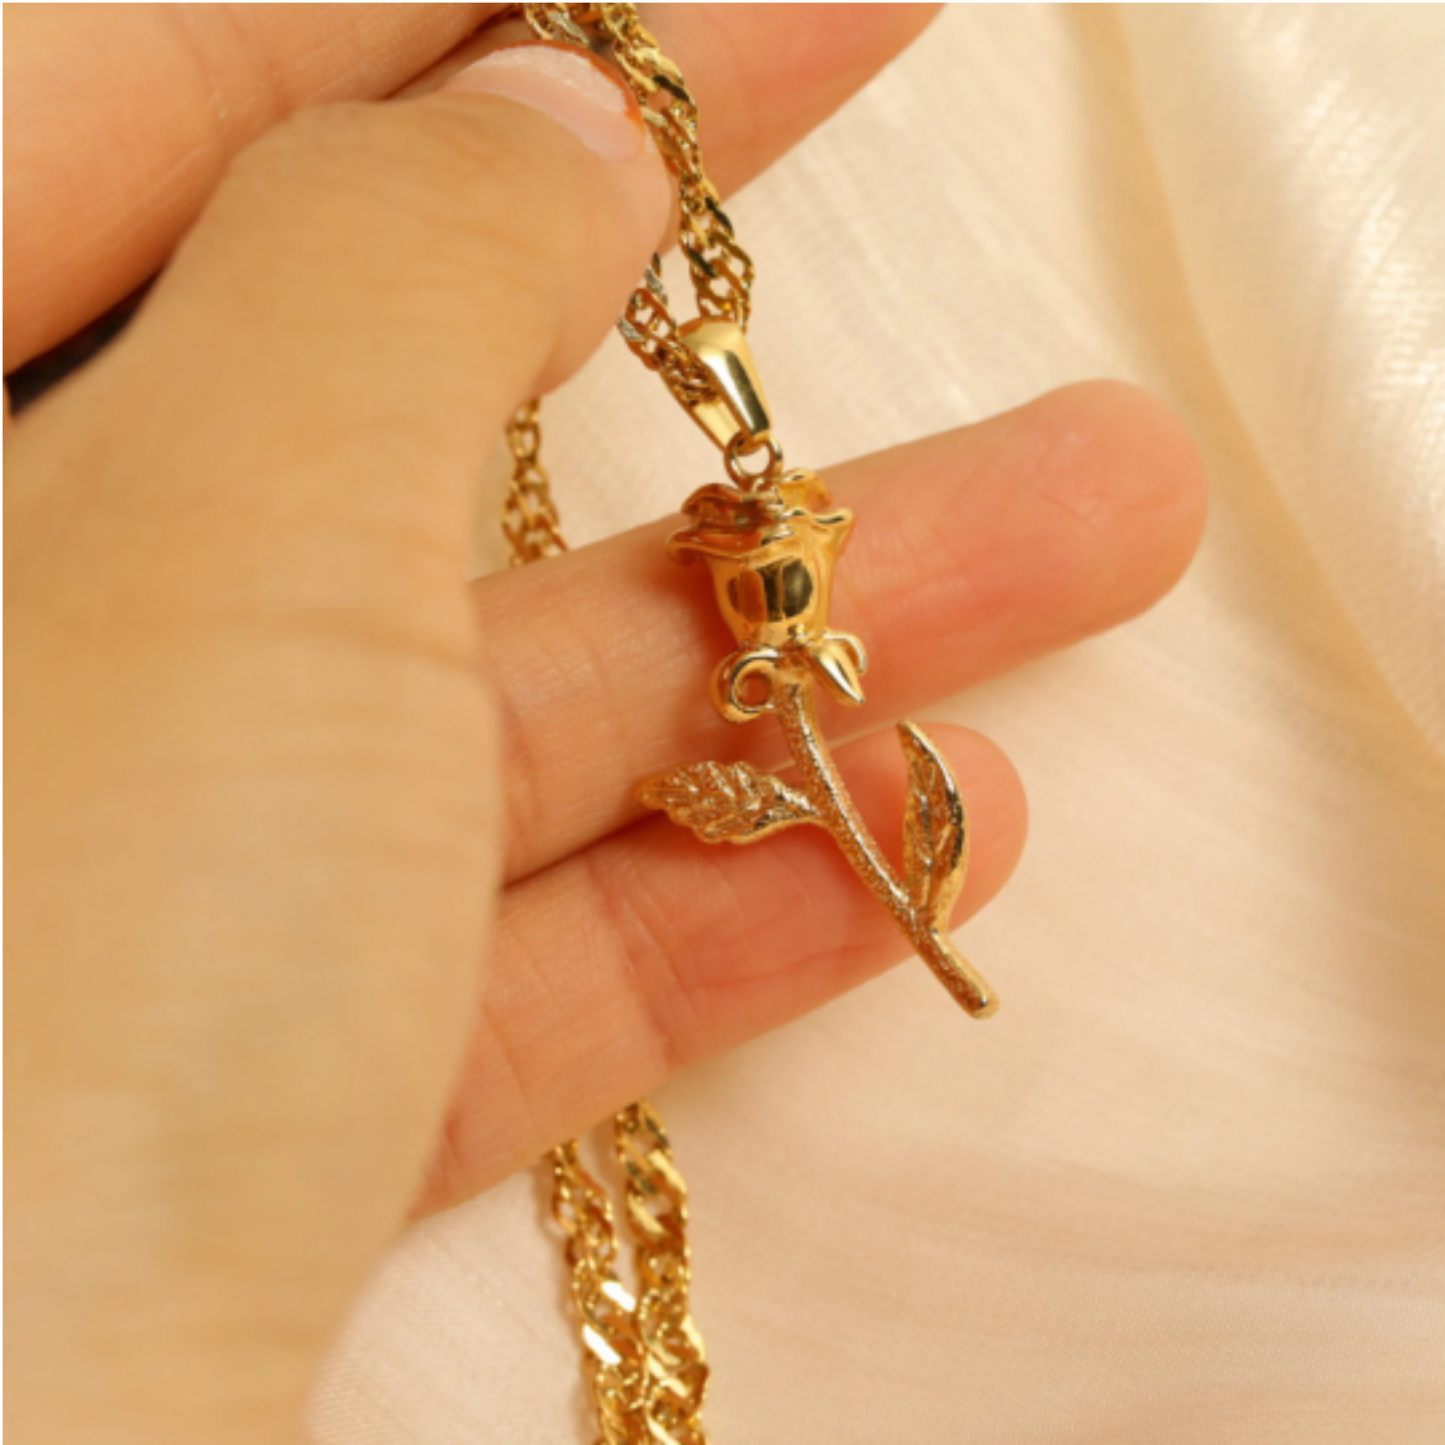 Handmade Gold Flower Necklace for Women